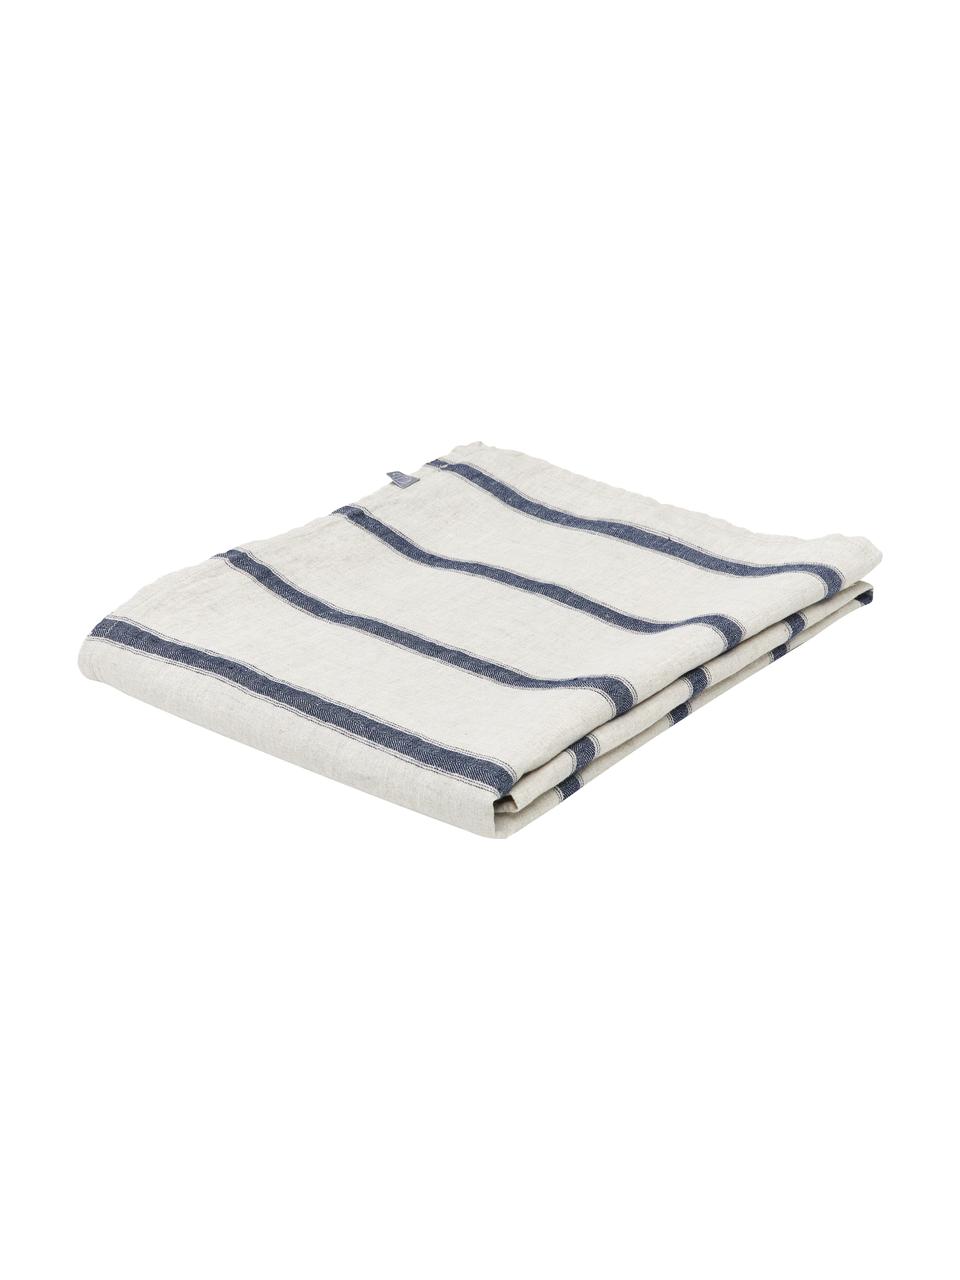 Mantel de lino a rayas Karla, 100% lino, Blanco crudo, azul, De 6 a 8 comensales (An 145 x L 250 cm)